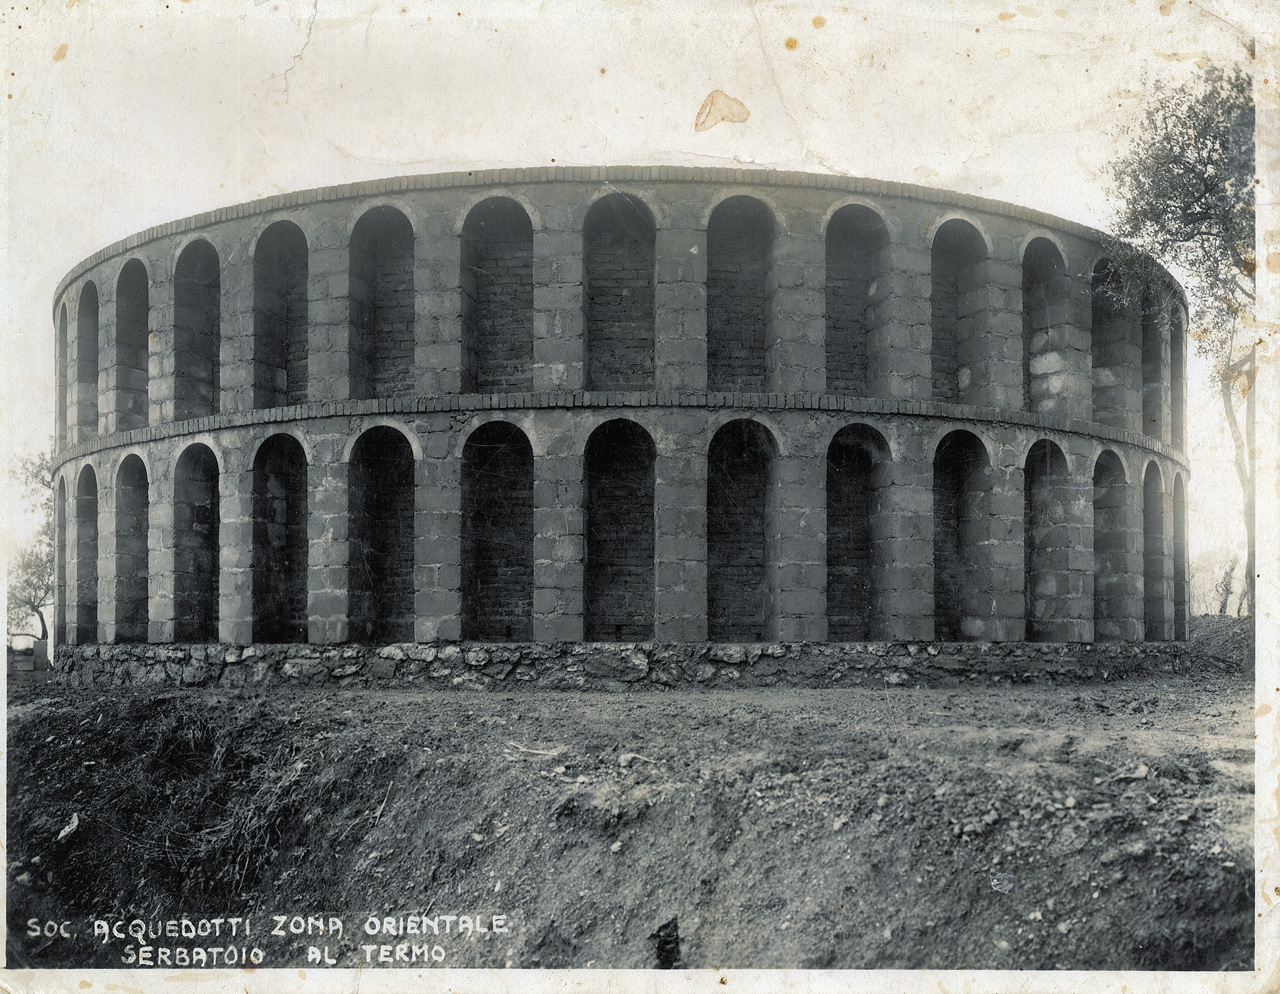 1930 - Acquedotto della Spezia - Serbatoio del termo